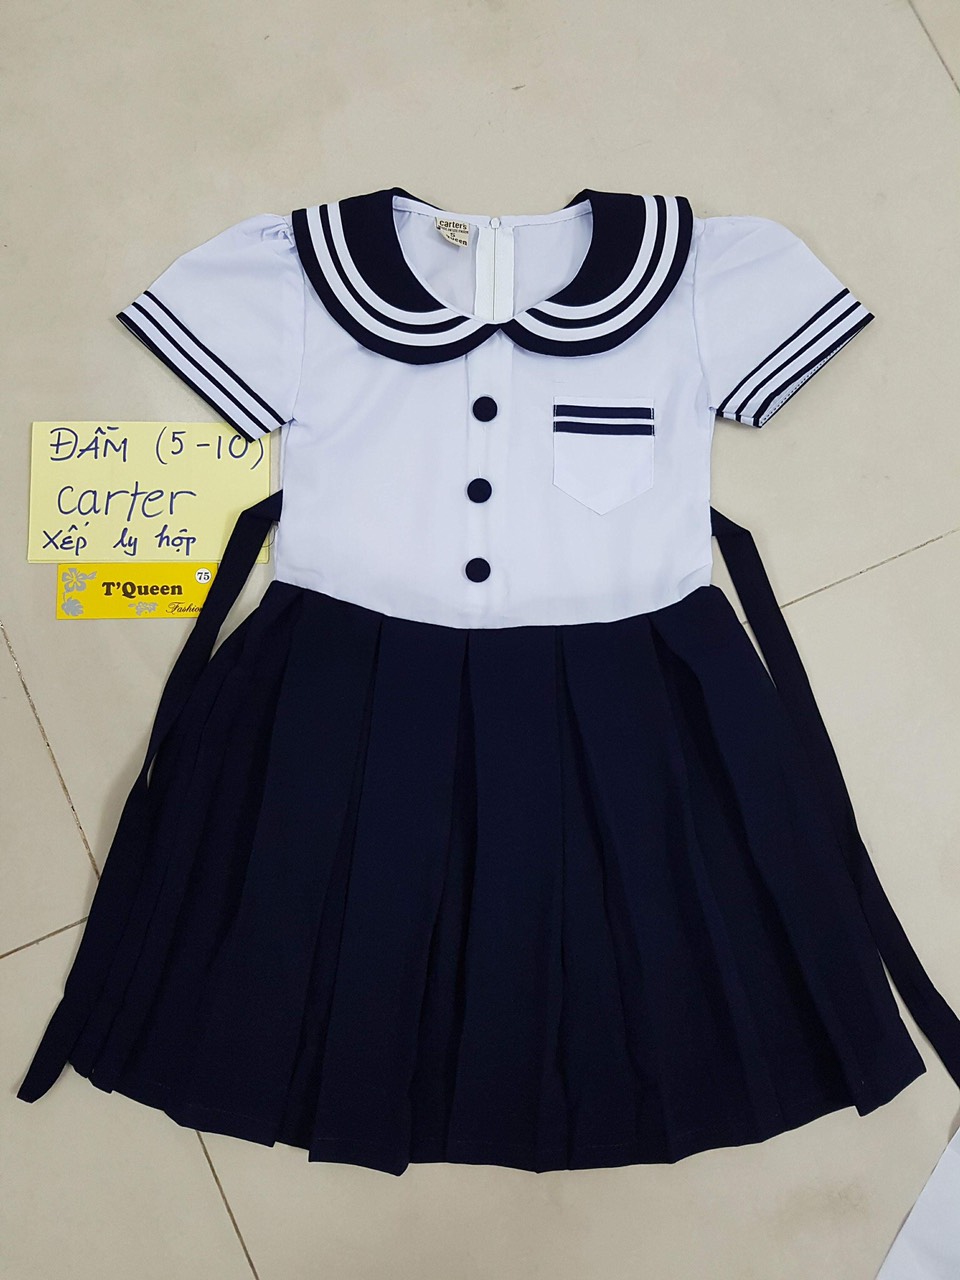 500+ Mẫu áo đồng phục học sinh tiểu học,cấp 2, 3 Đẹp Hot Trend